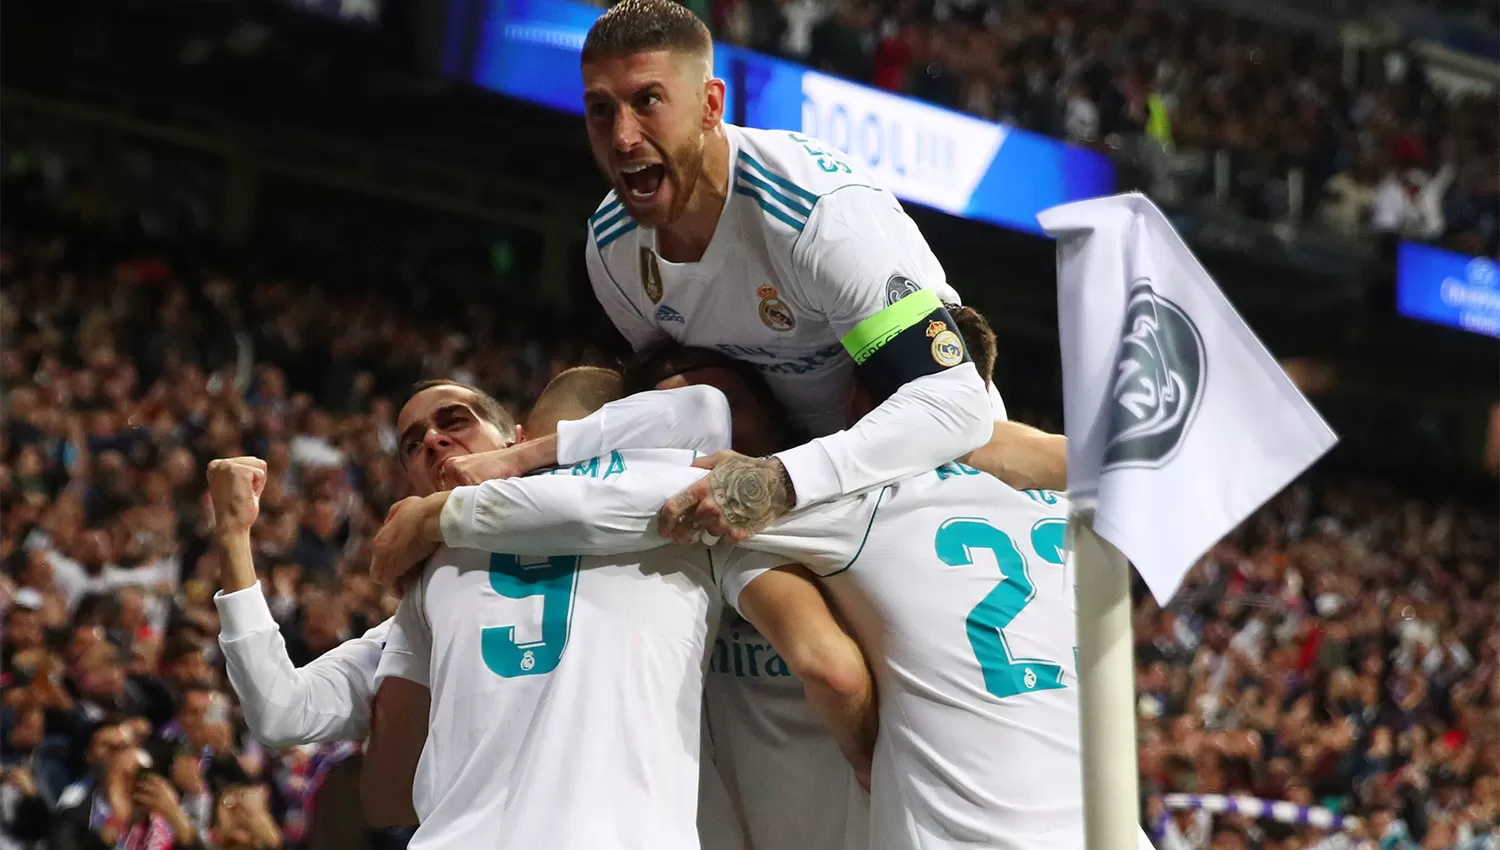 MAGIA BLANCA. Real Madrid sufrió en el final, pero sacó boleto para la final de la Champions. REUTERS